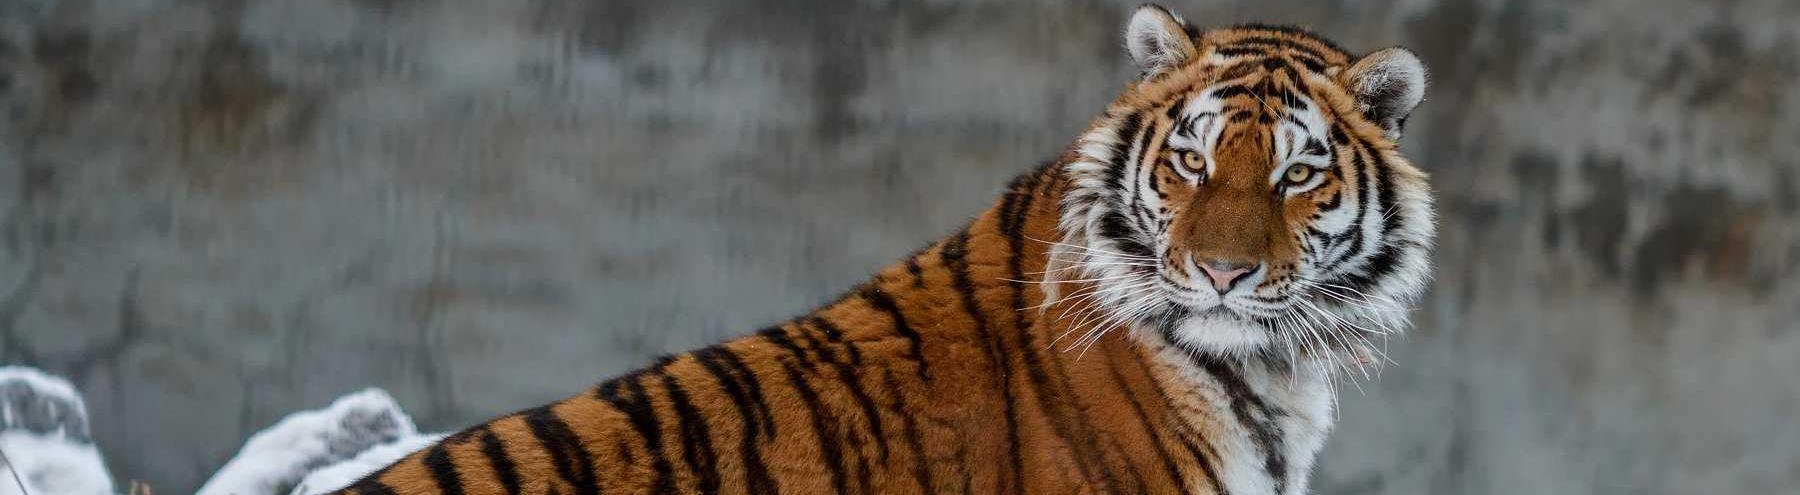 В России вырастет площадь ООПТ для охраны амурского тигра 